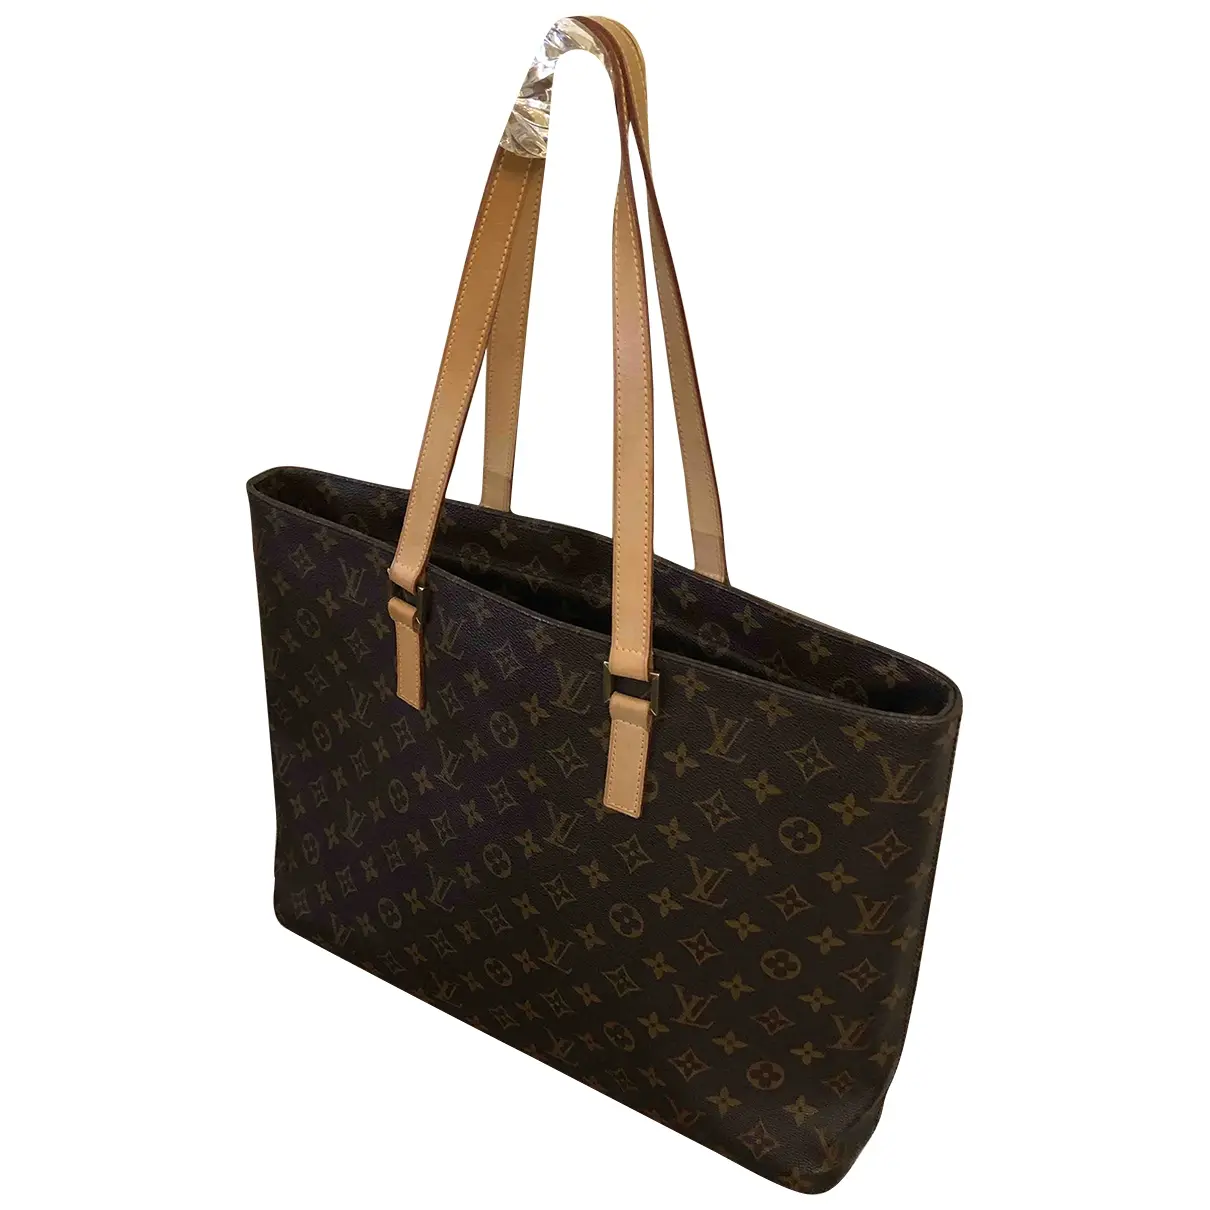 Piano cloth handbag Louis Vuitton